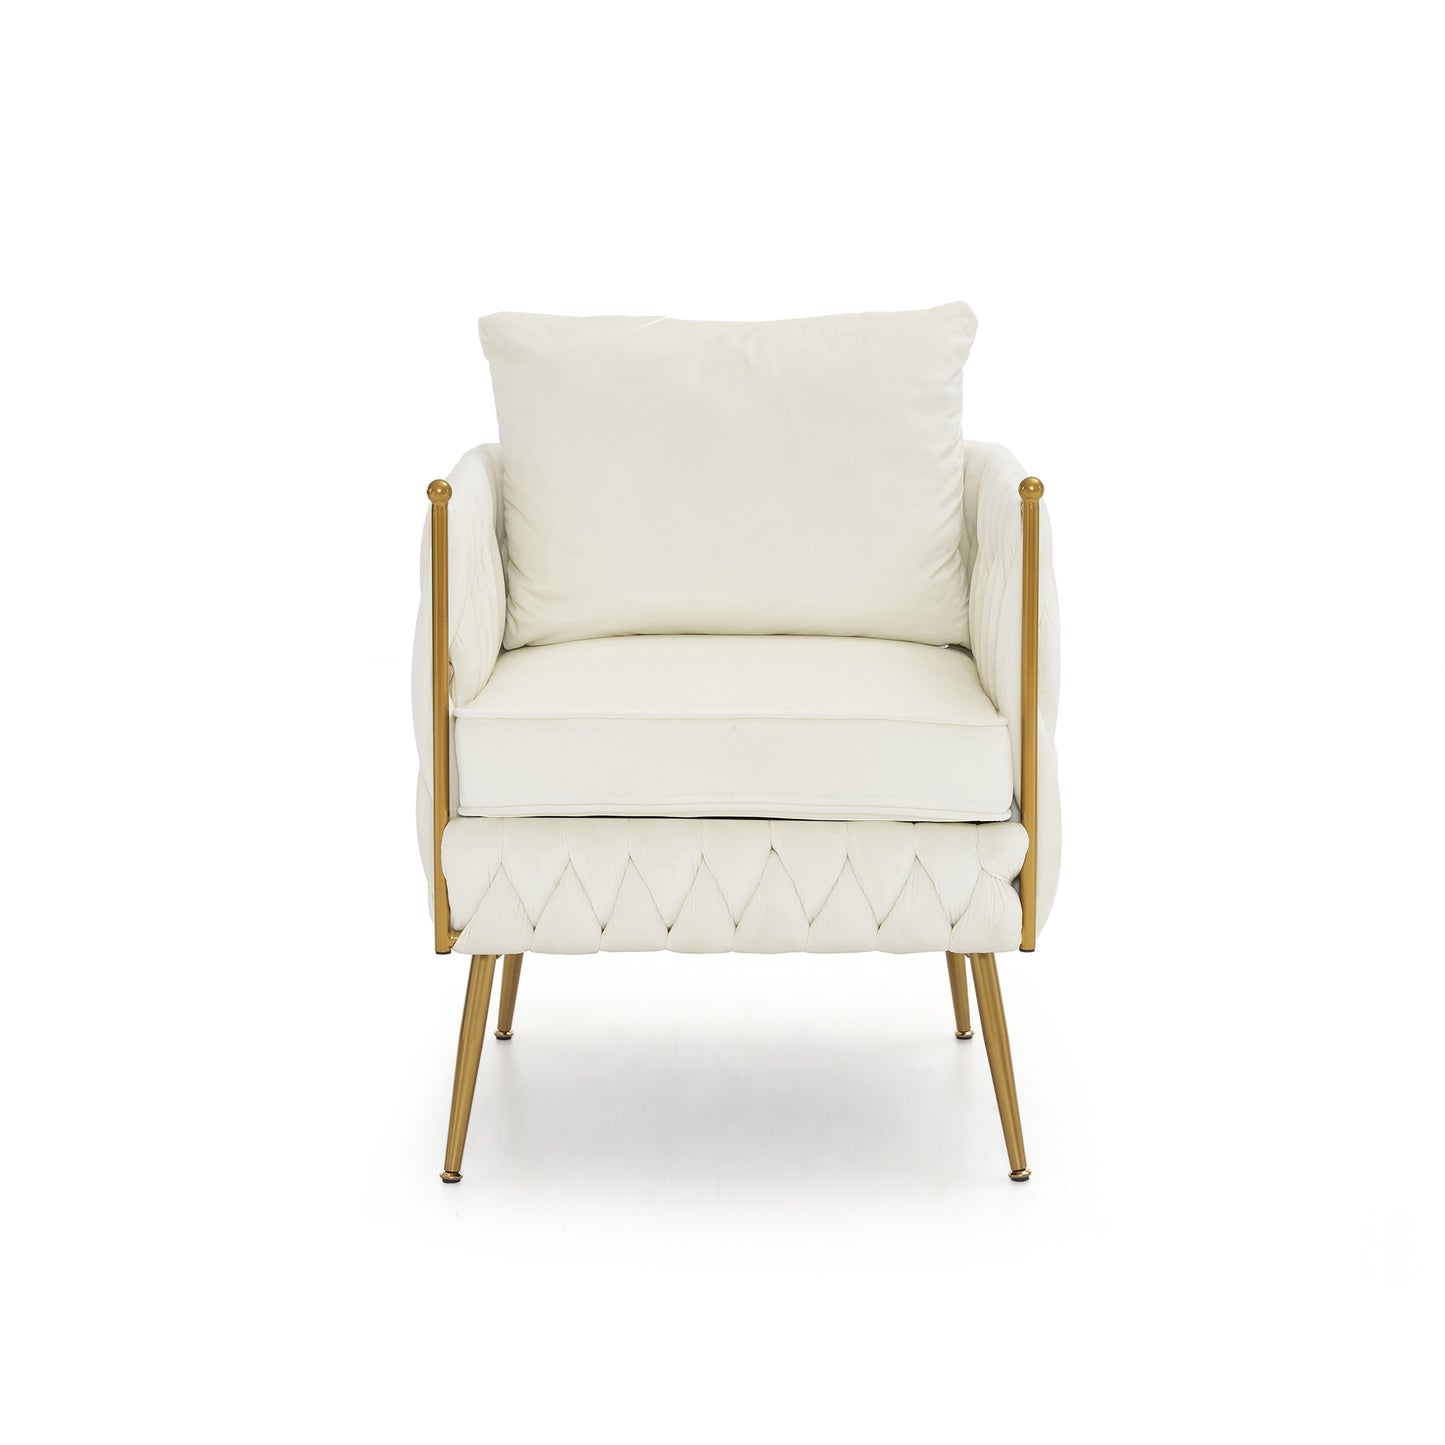 2 pieces modern upholstered couch set, cream white velvet